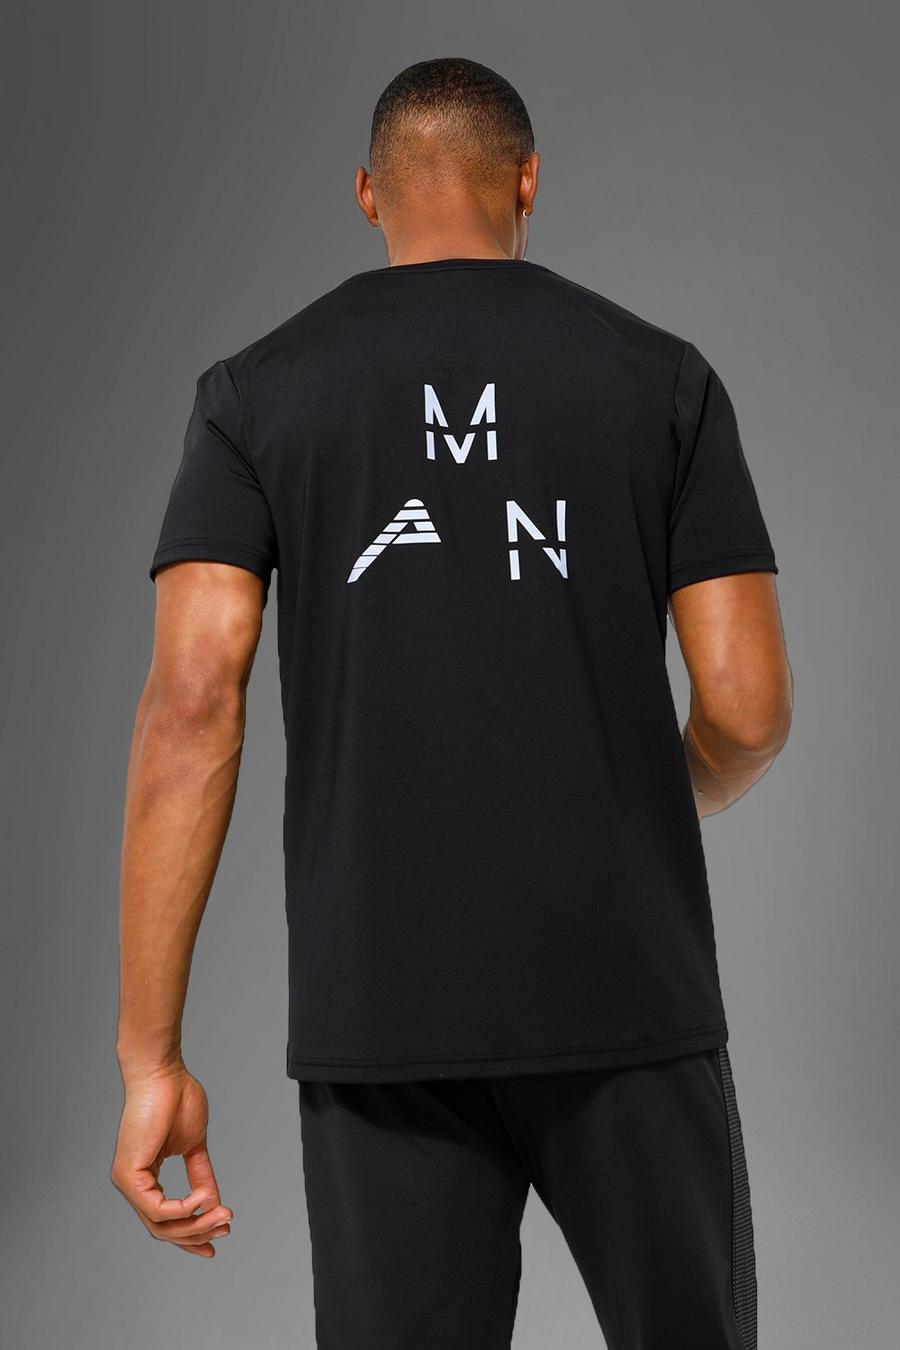 Camiseta MAN Active deportiva con estampado reflectante en la espalda, Black nero